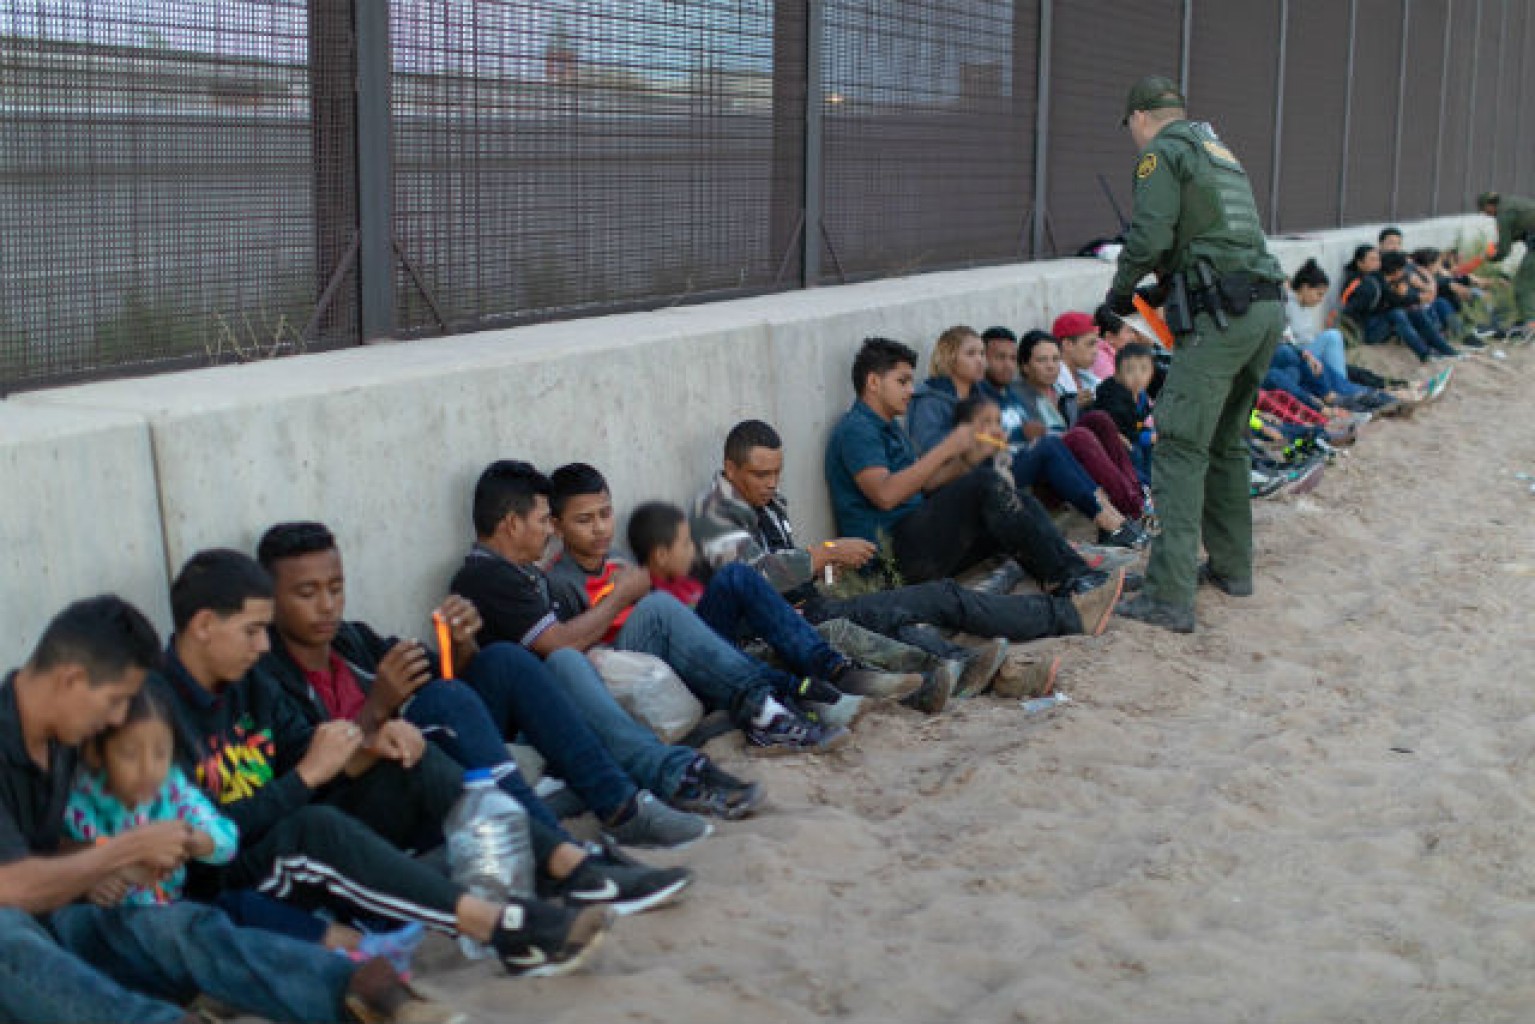 Juez se niega a cuestionar separaciones familiares en la frontera